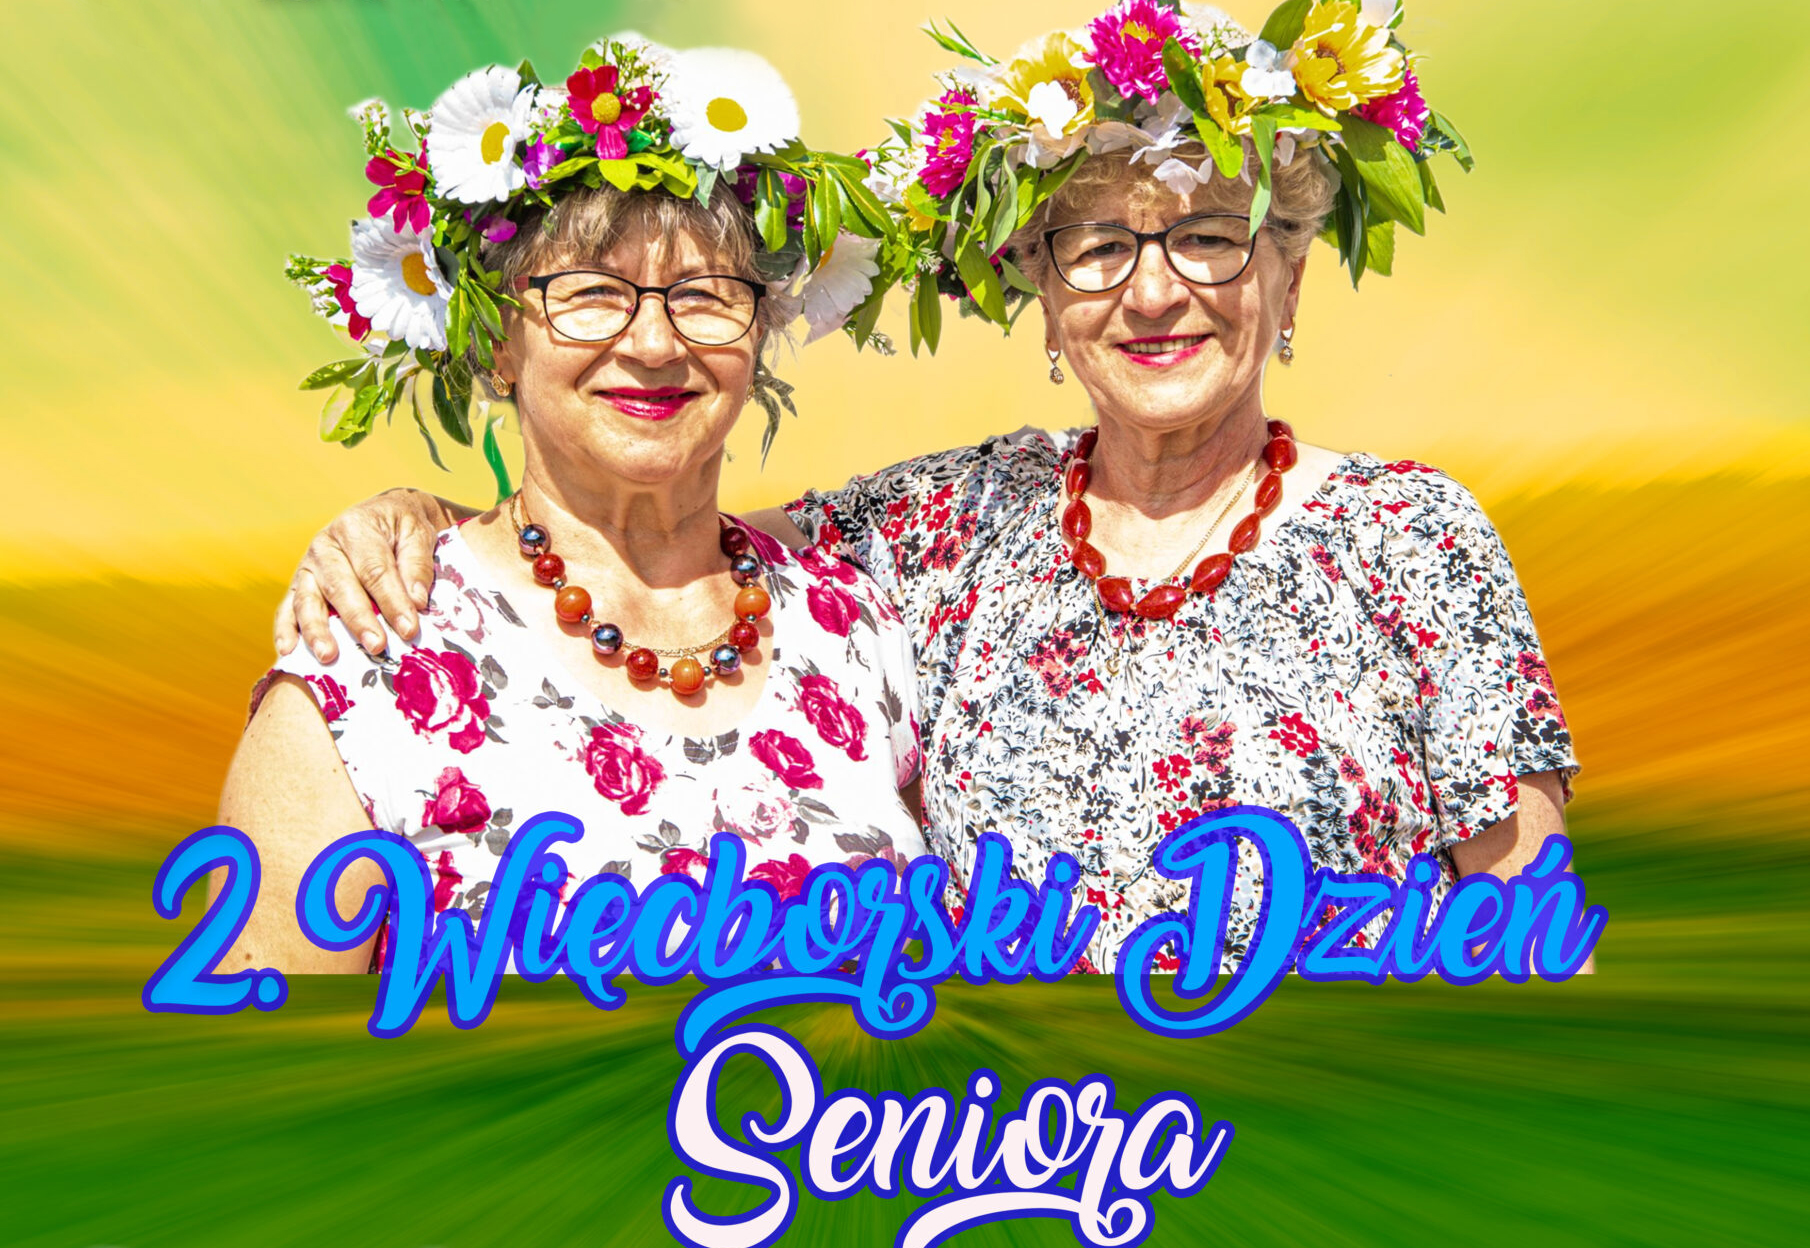 Więcborski Dzień Seniora z Centrum Aktywności Seniora w Więcborku